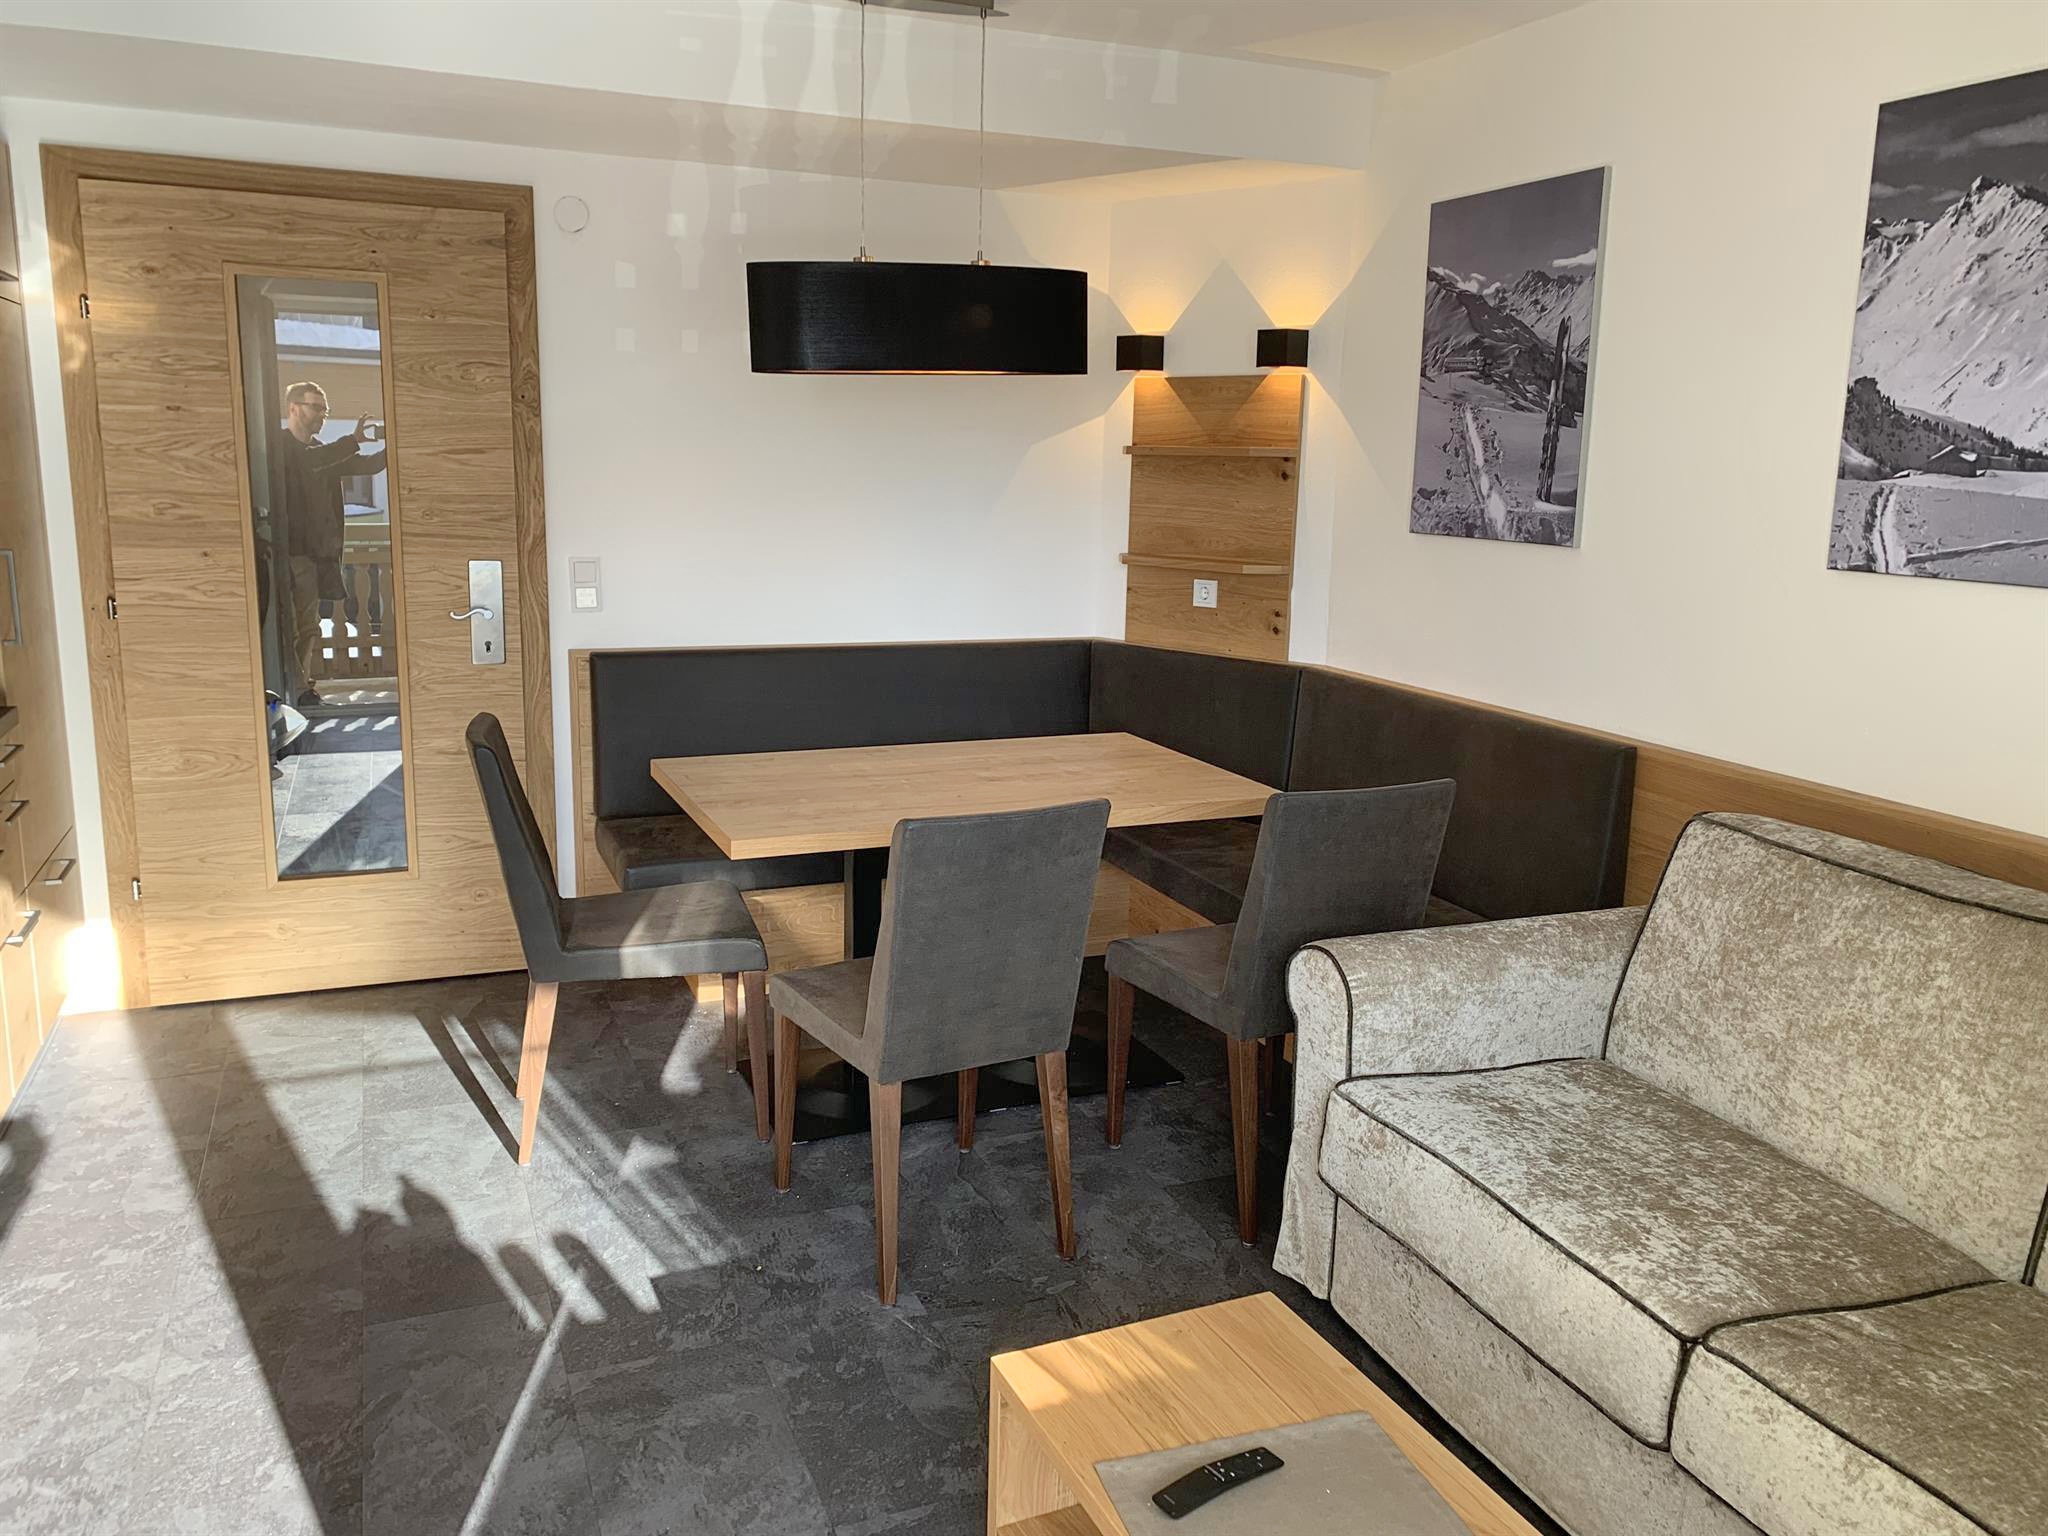 Hotel Daniel: Appartement für 4 Personen - Wohnbereich mit Esstisch (Beispiel)